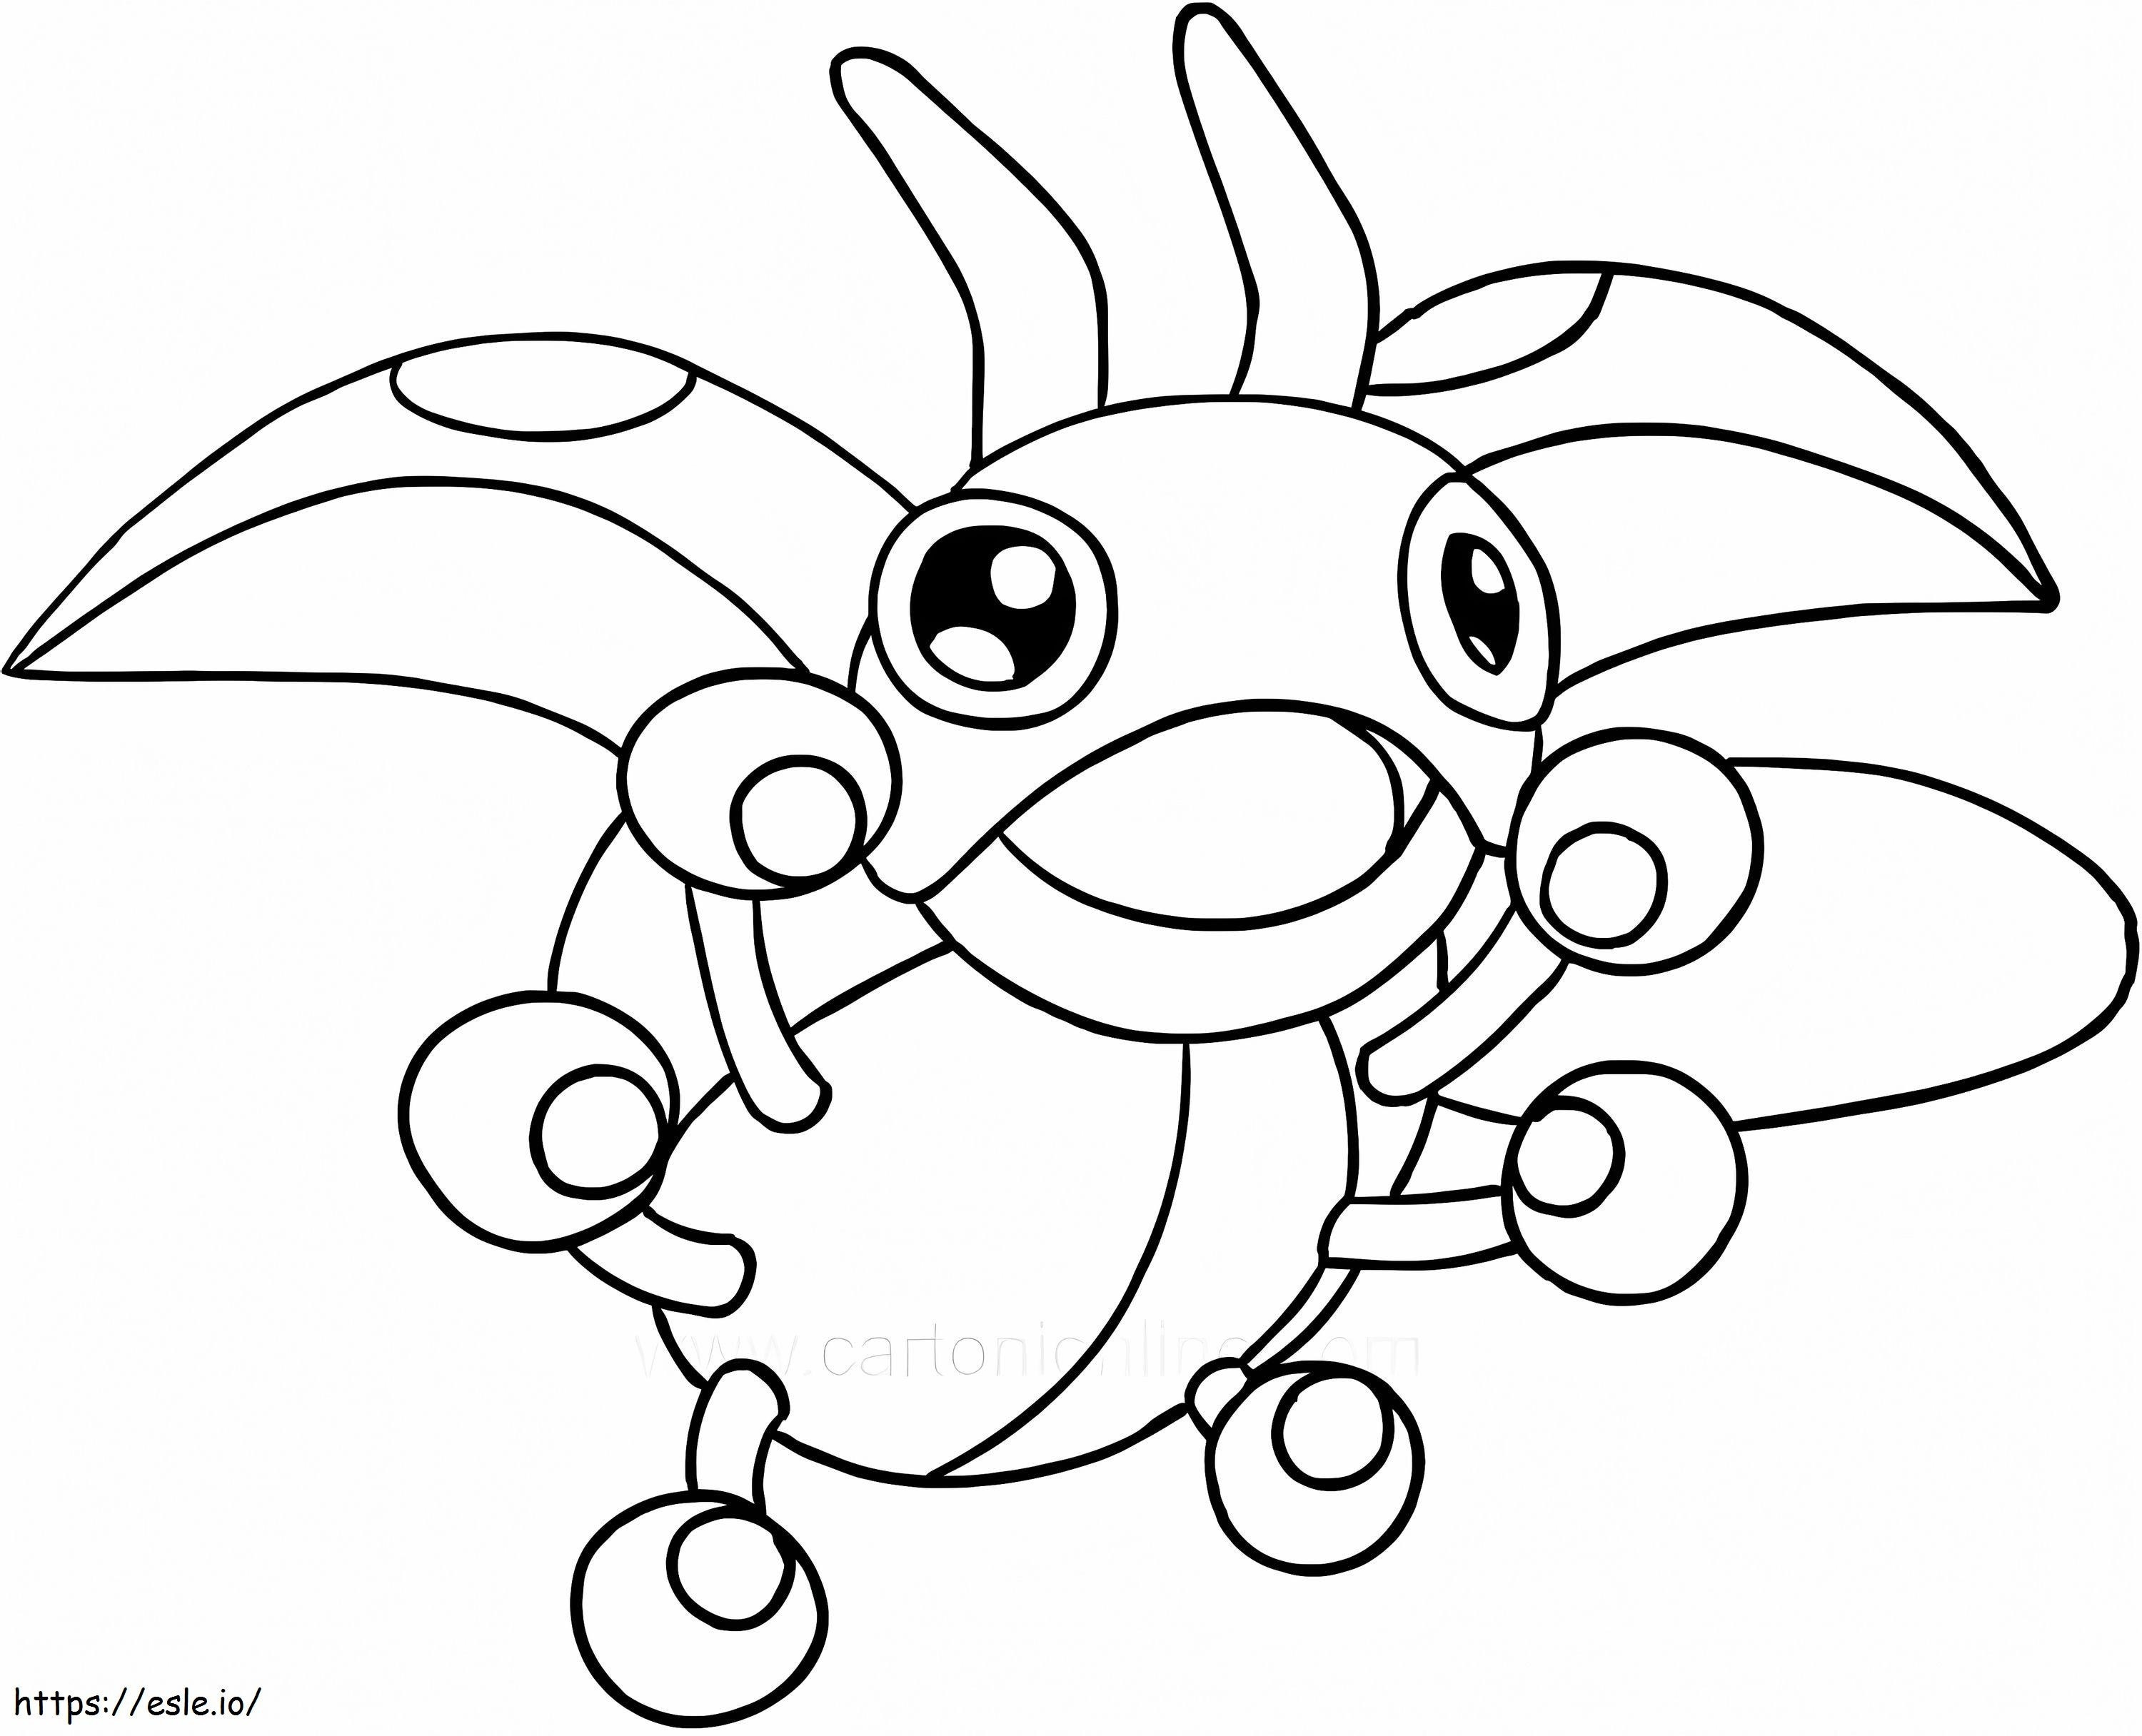 Coloriage Pokémon Ledyba imprimable à imprimer dessin